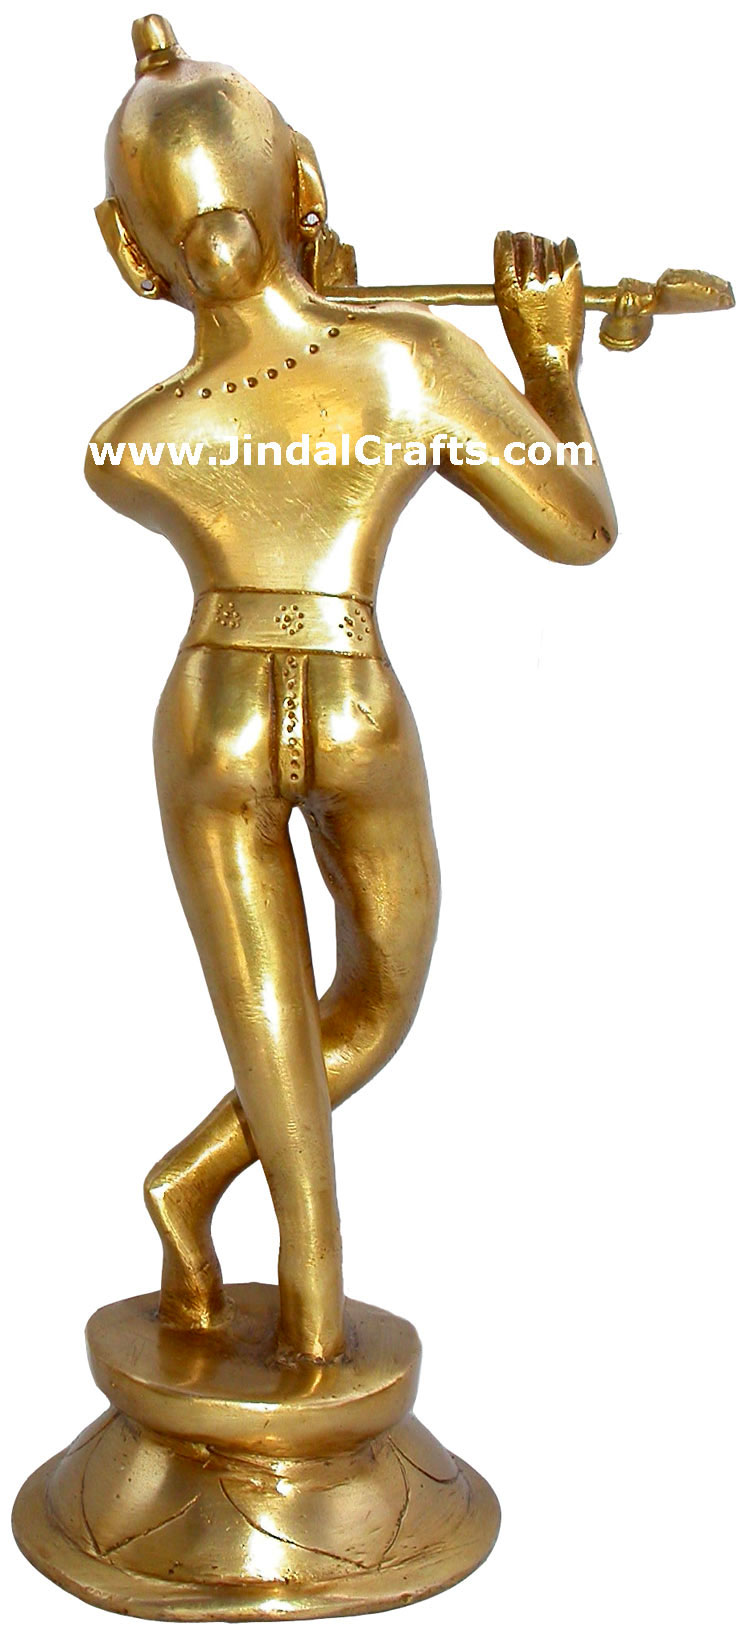 Lord Krishna Flute Hindu God Brass Sculpture India Arts